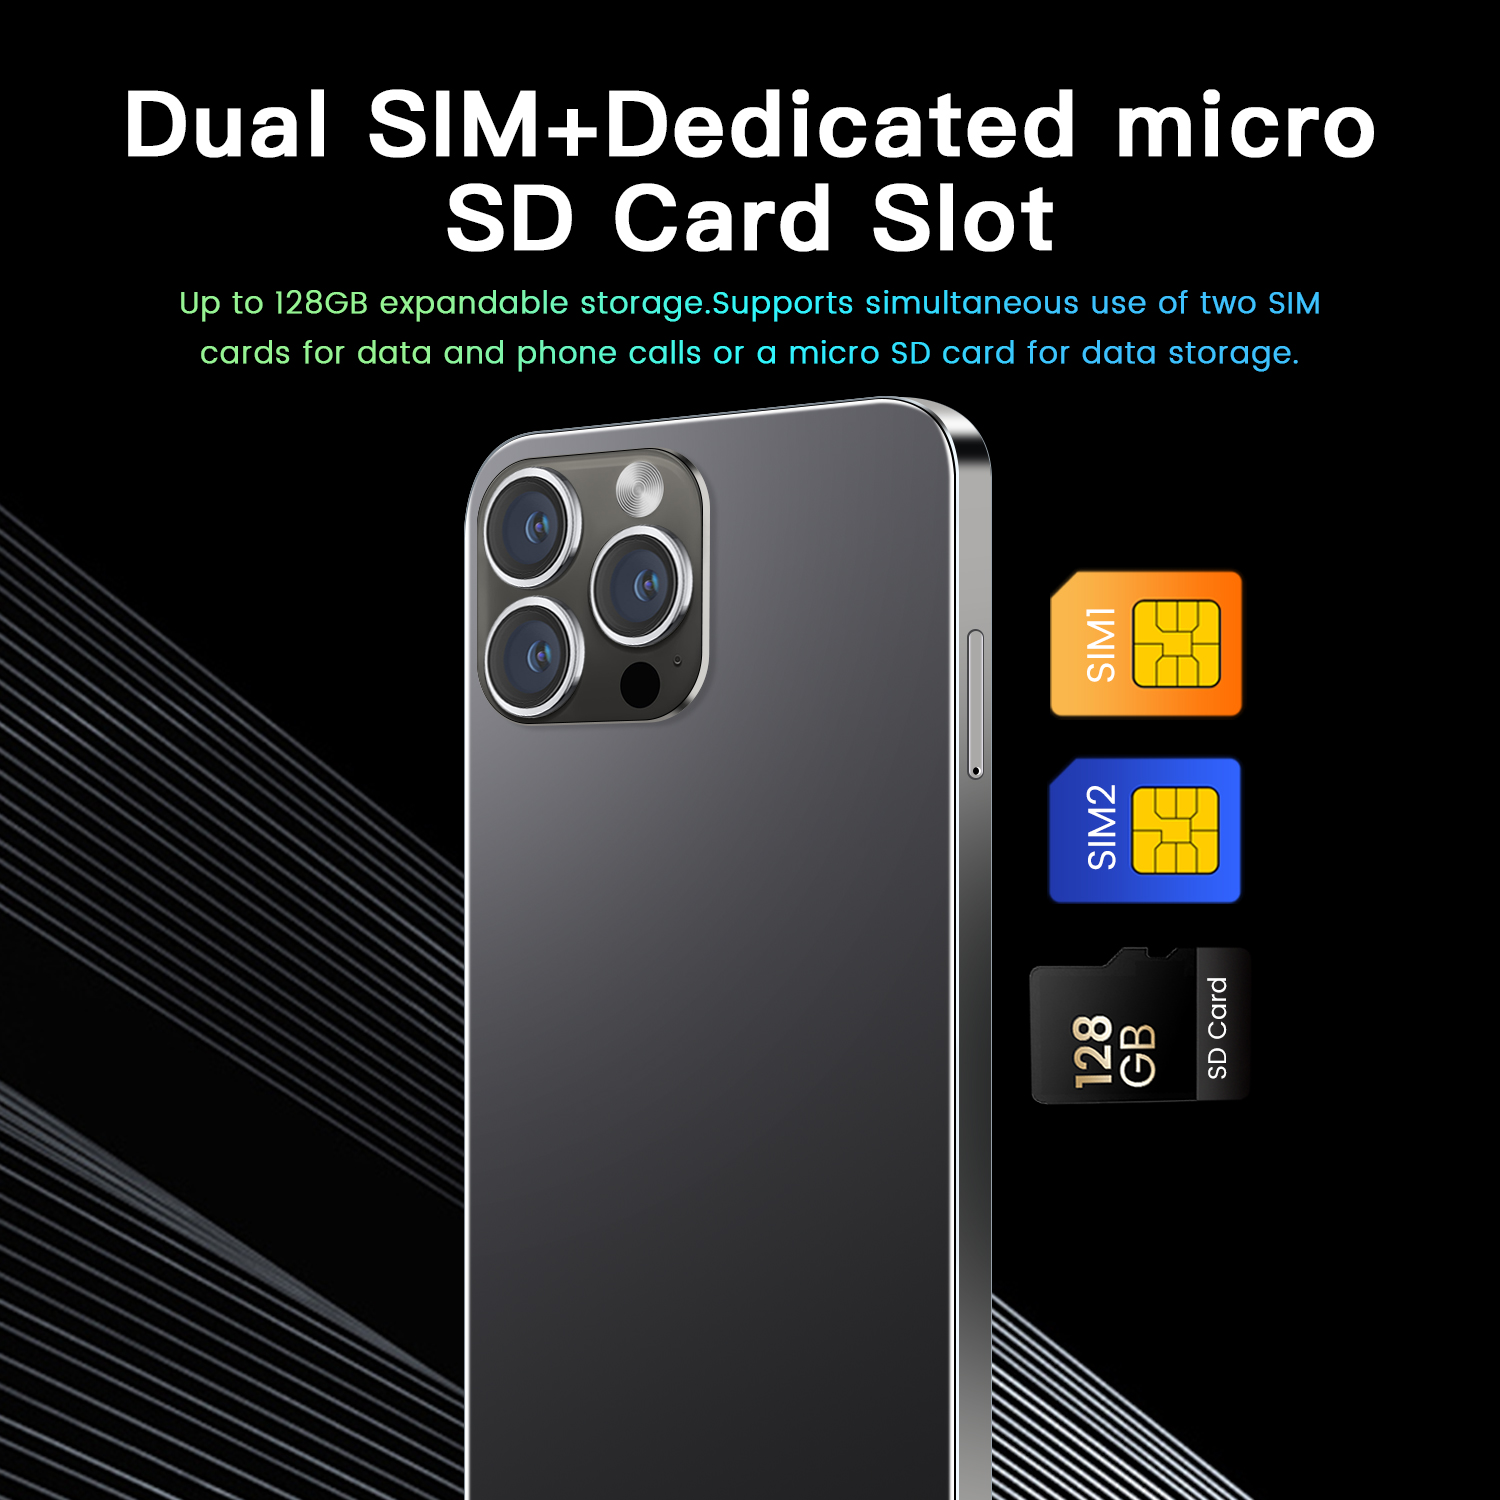 đt i14 Pro max di động giá rẻ Điện thoại di động chính hãng đặc biệt bán điện thoại mới  Full HD 6.2Inch  1+8GB  Hai Thẻ Sim Camera HD 3+5MP Pin 3000mAh giá rẻ - học trực tuyến tốt - chơi game mượt，shopdunk official store